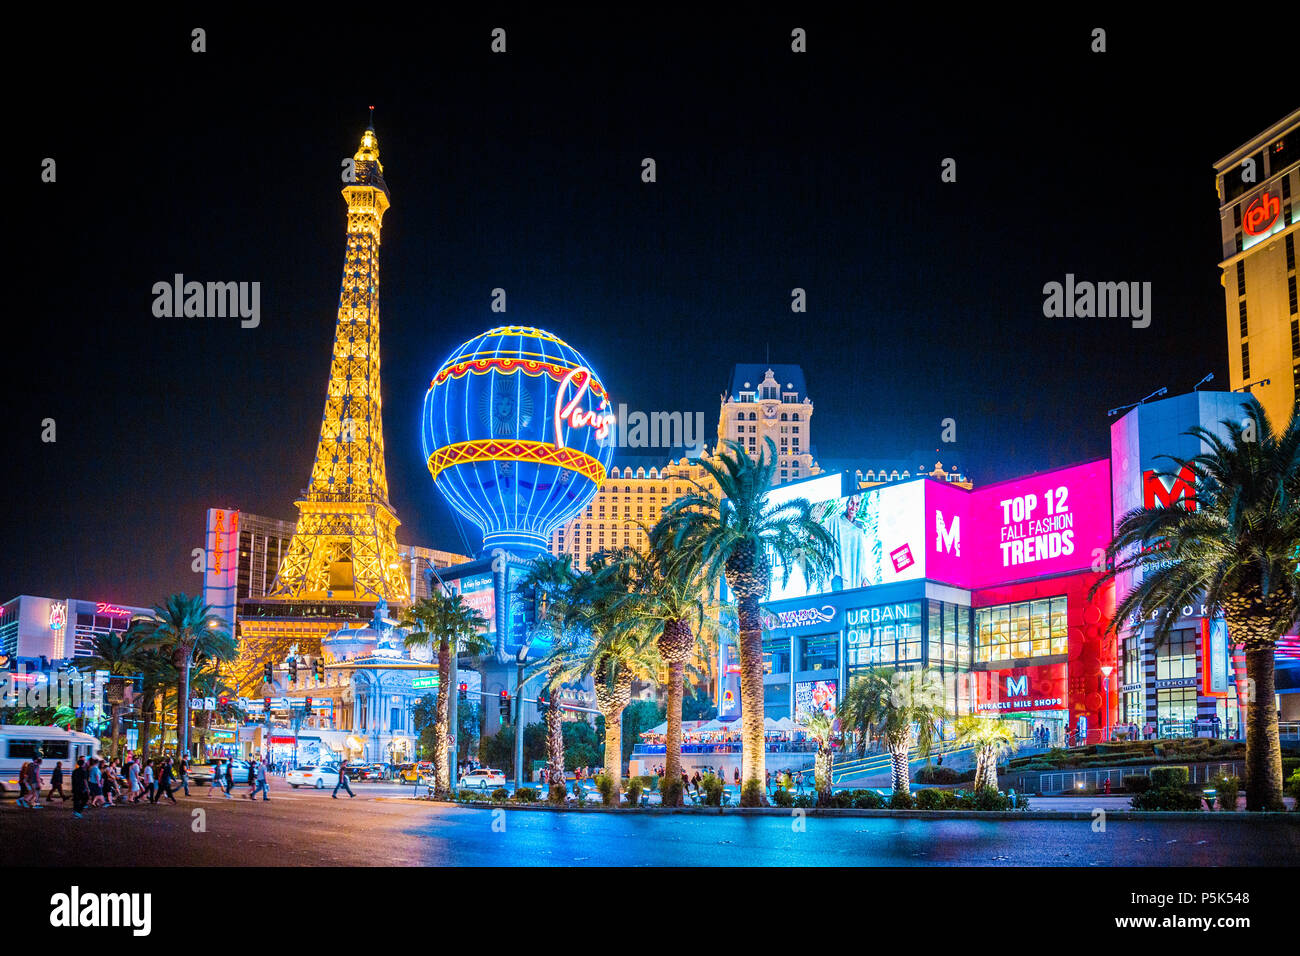 20 septembre 2017 - LAS VEGAS : Classique vue panoramique du centre-ville de Las Vegas coloré avec la bande de renommée mondiale et complexe de l'hôtel Paris Las Vegas Banque D'Images